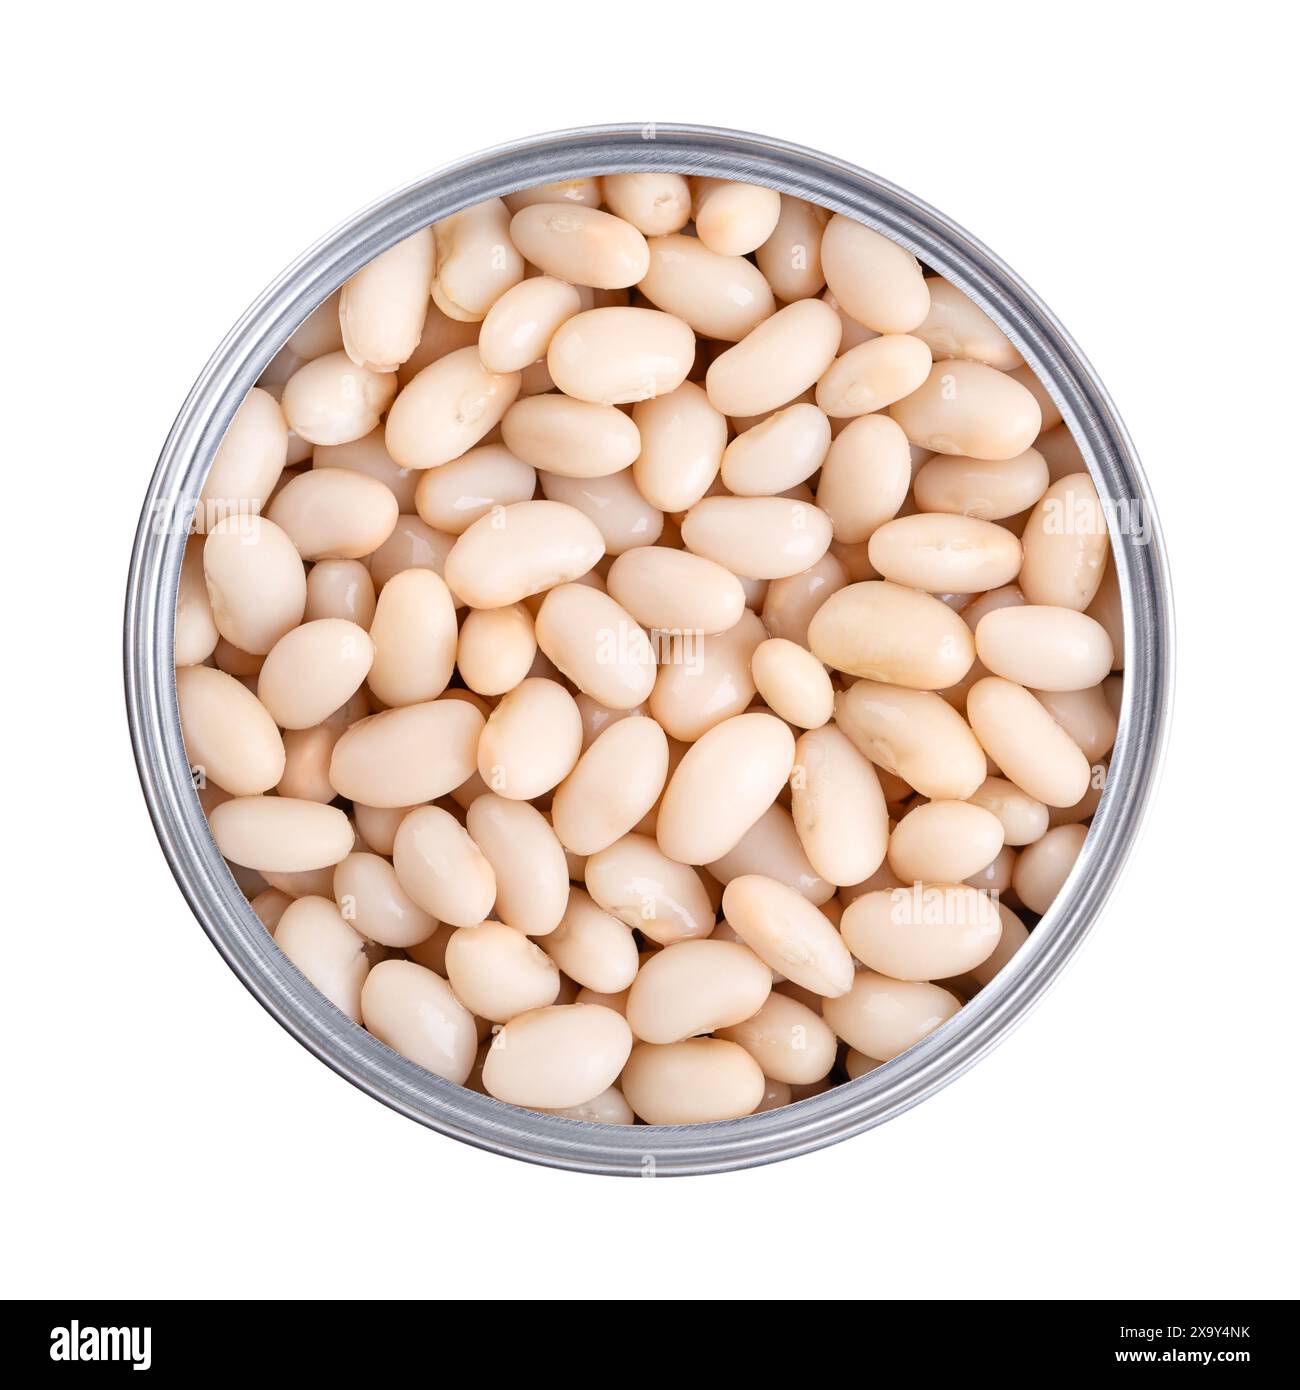 Weiße Kidneybohnen in einer geöffneten Dose. Gekochte und konservierte Cannellini-Bohnen, eine Vielzahl der gewöhnlichen Bohnen, Phaseolus vulgaris, ein vegetarisches Grundnahrungsmittel. Stockfoto